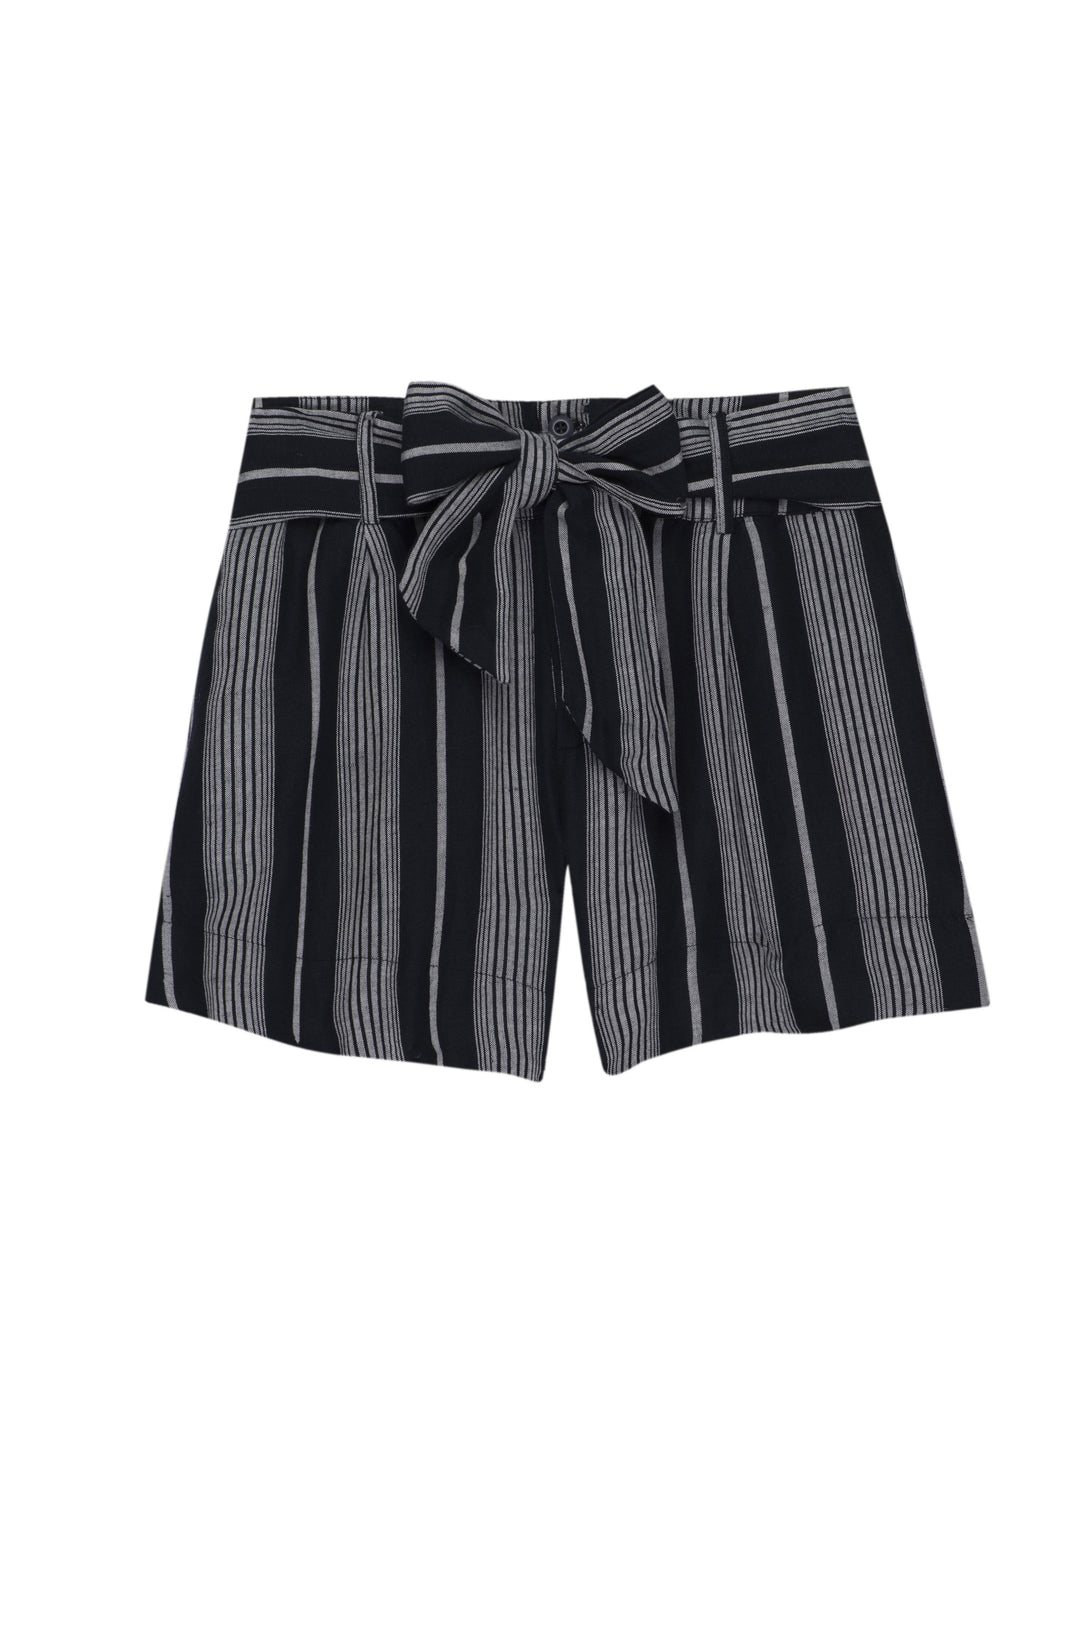 RAILS - Katy Linen Shorts in Mediterranean Stripe